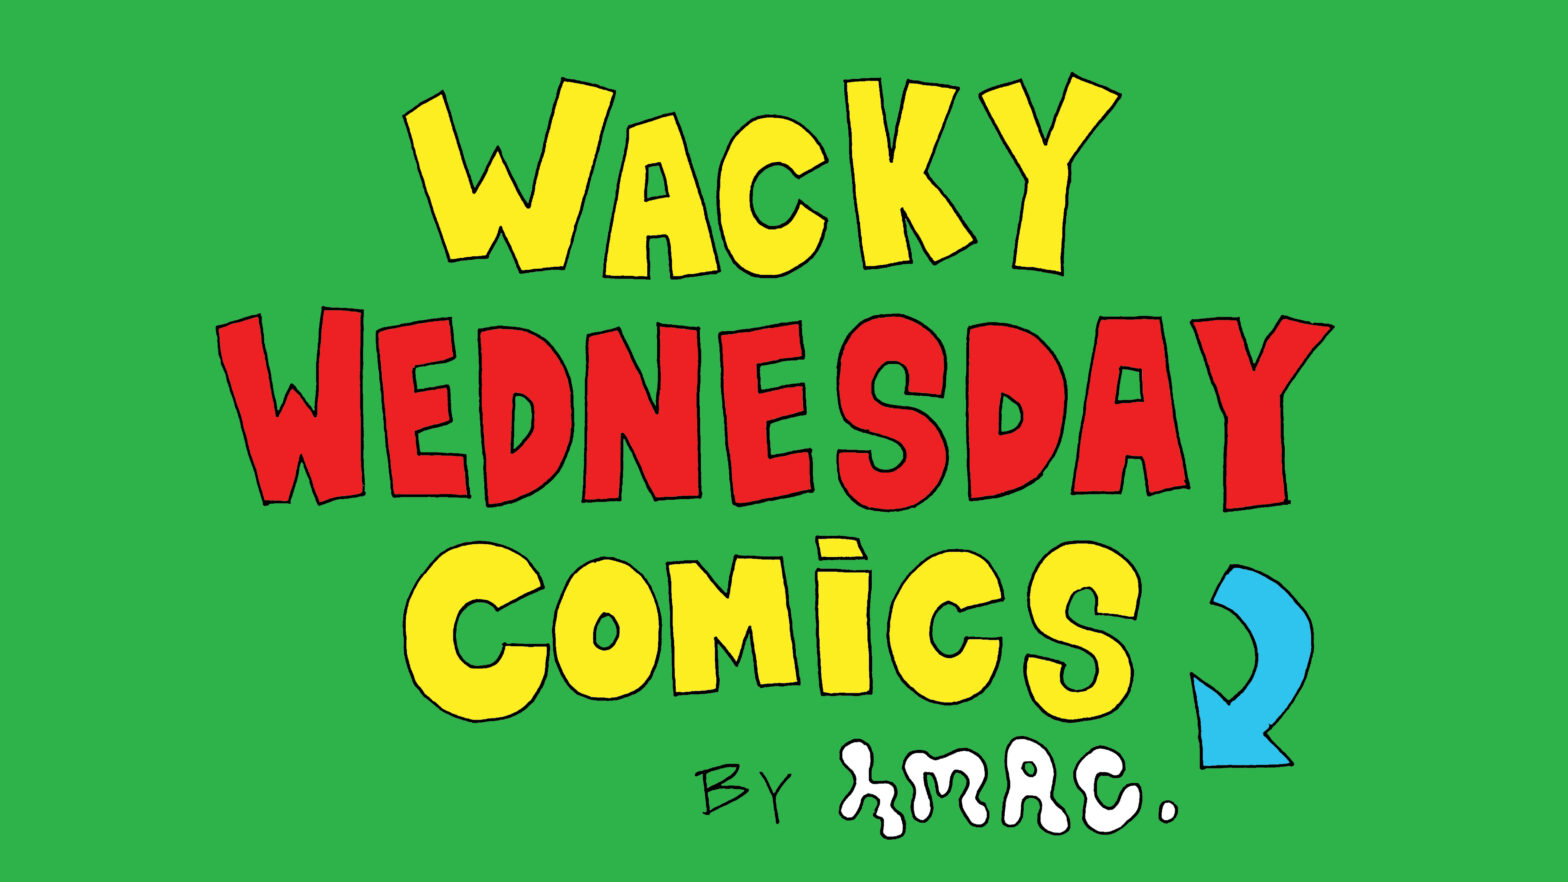 Wacky Wednesday Comics by HMAC